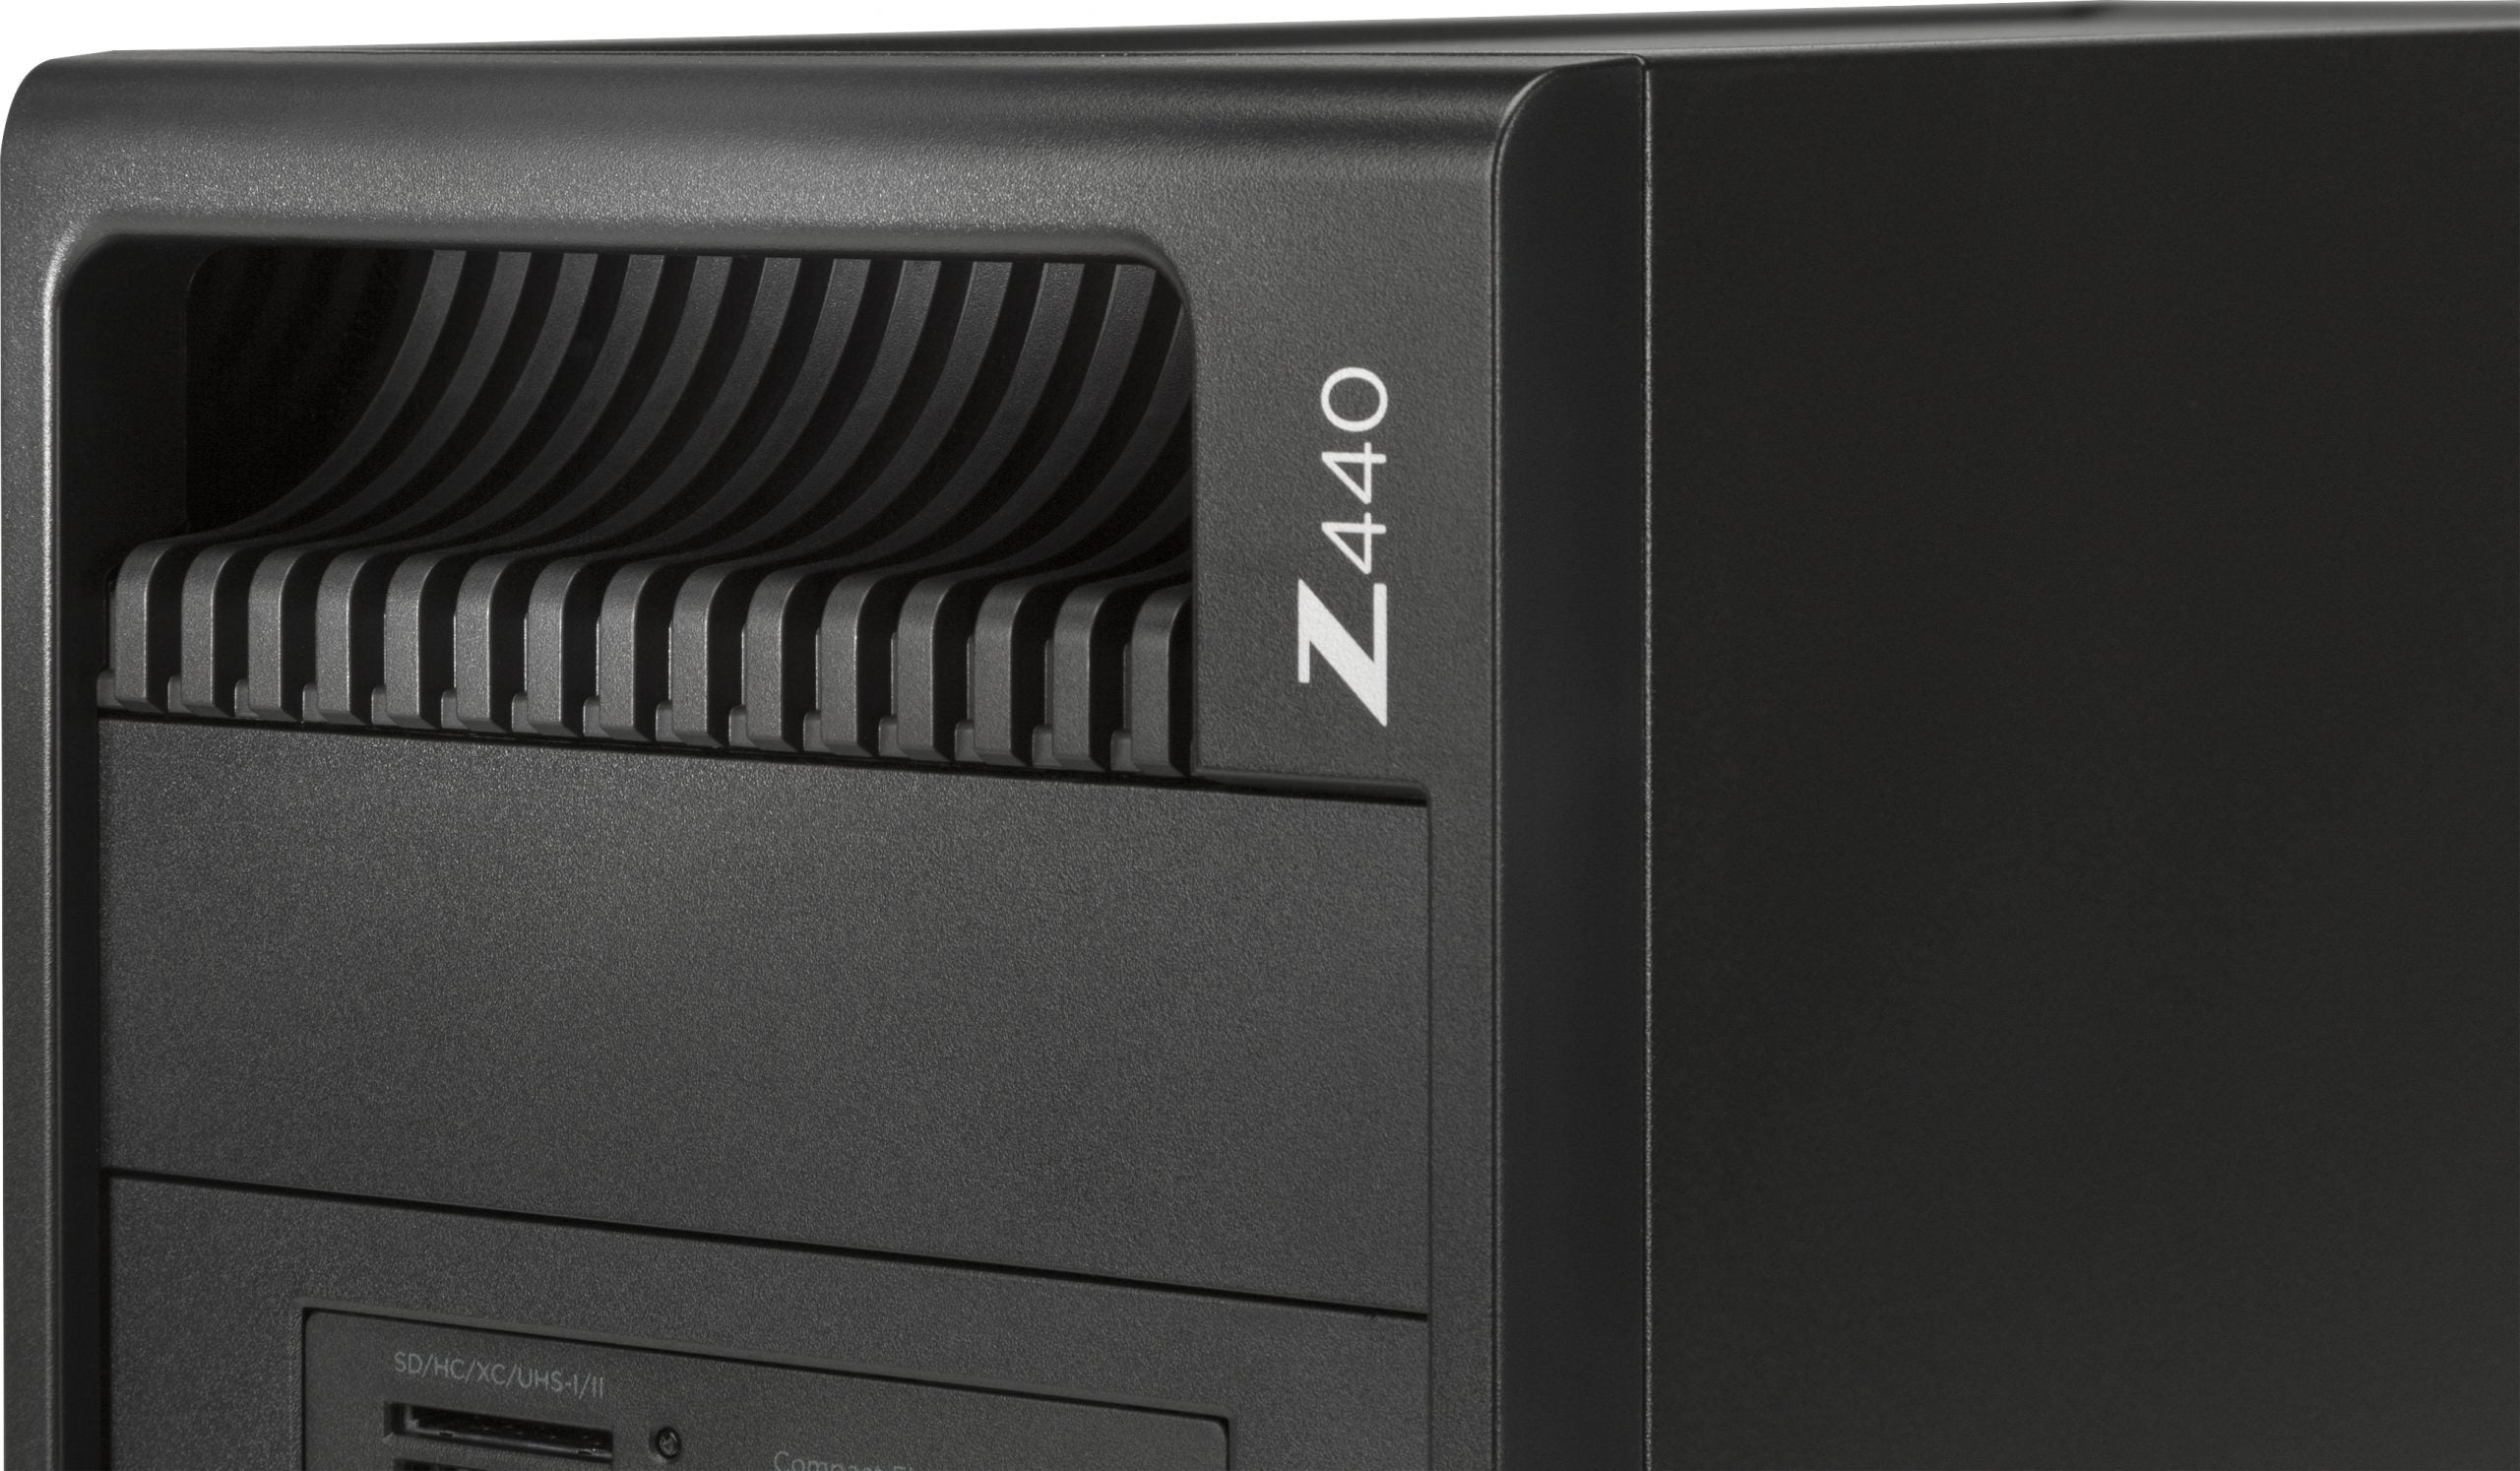 Ricondizionato - HP Z440 Workstation Tower | Intel Xeon E5-1603 2.85Ghz |  SSD 1Tb | 32Gb Ram | Nvidia Quadro K2200 4Gb | Windows 10 Pro -  Messoanuovo.it - Usato e Ricondizionato Garantito